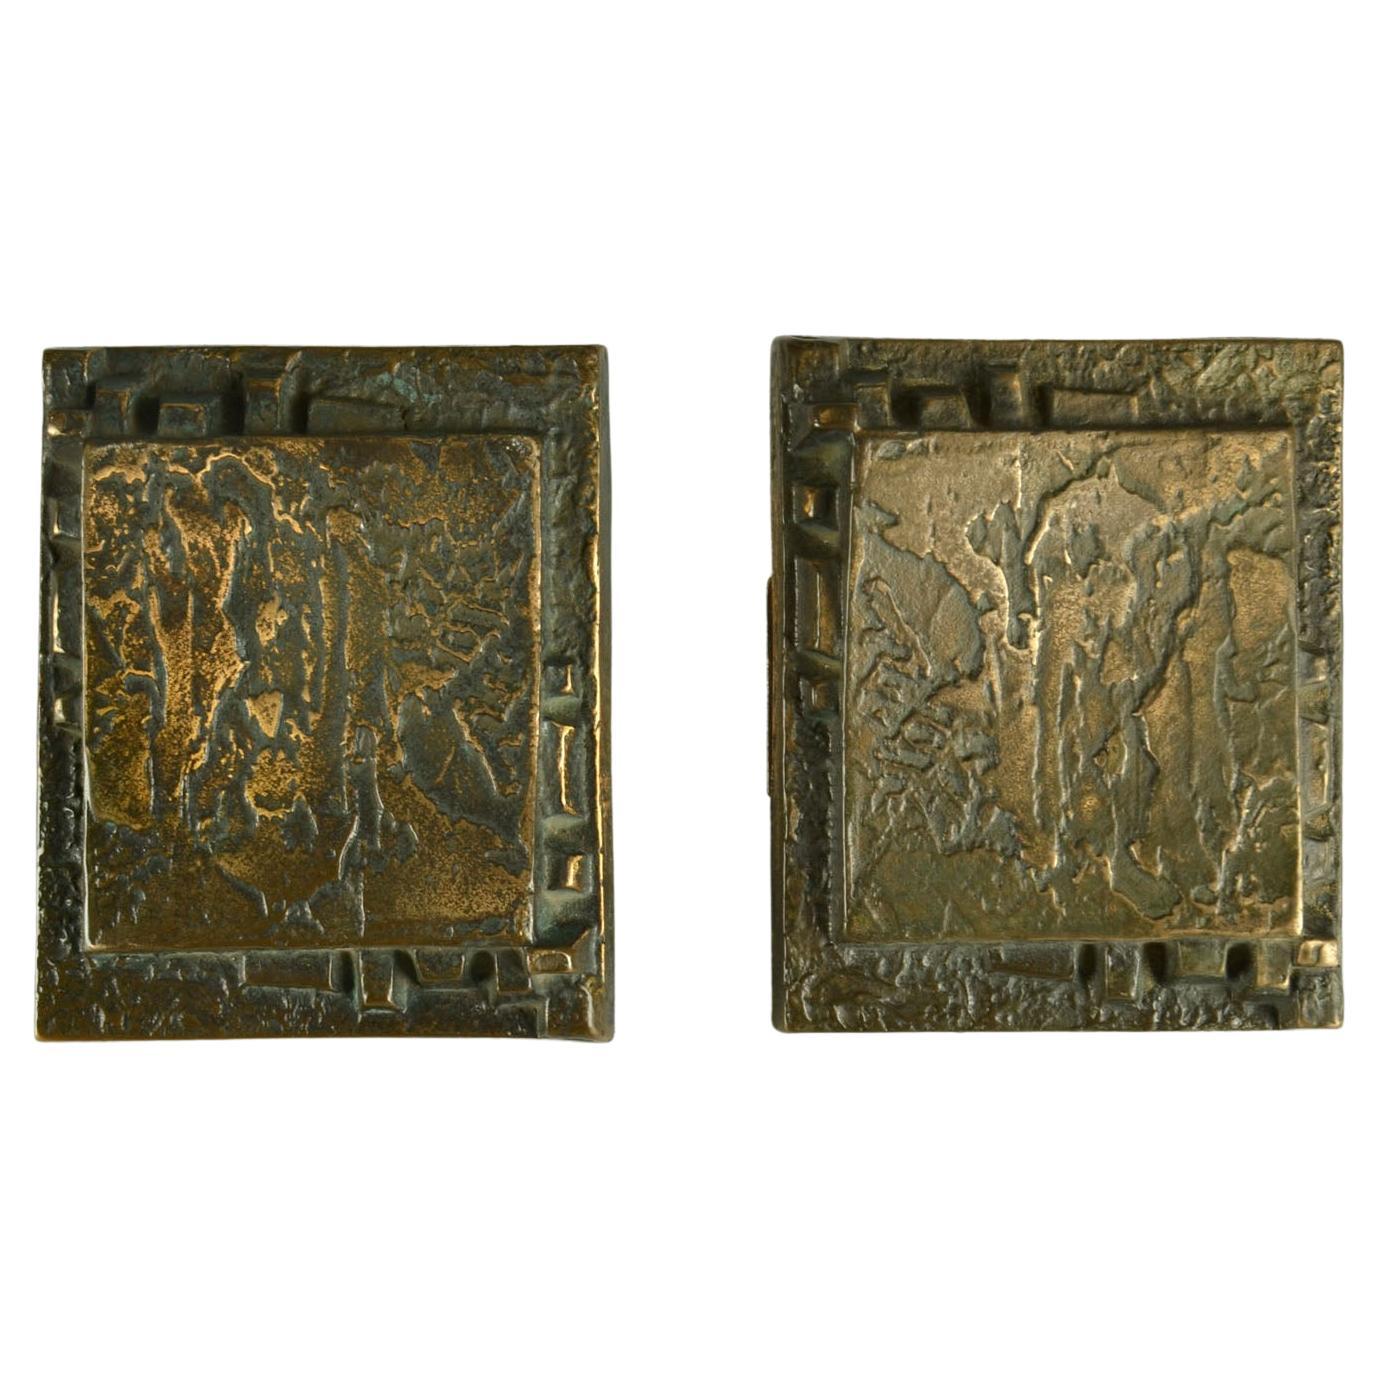 Pair of Bronze Push Pull Door Handles with Relief